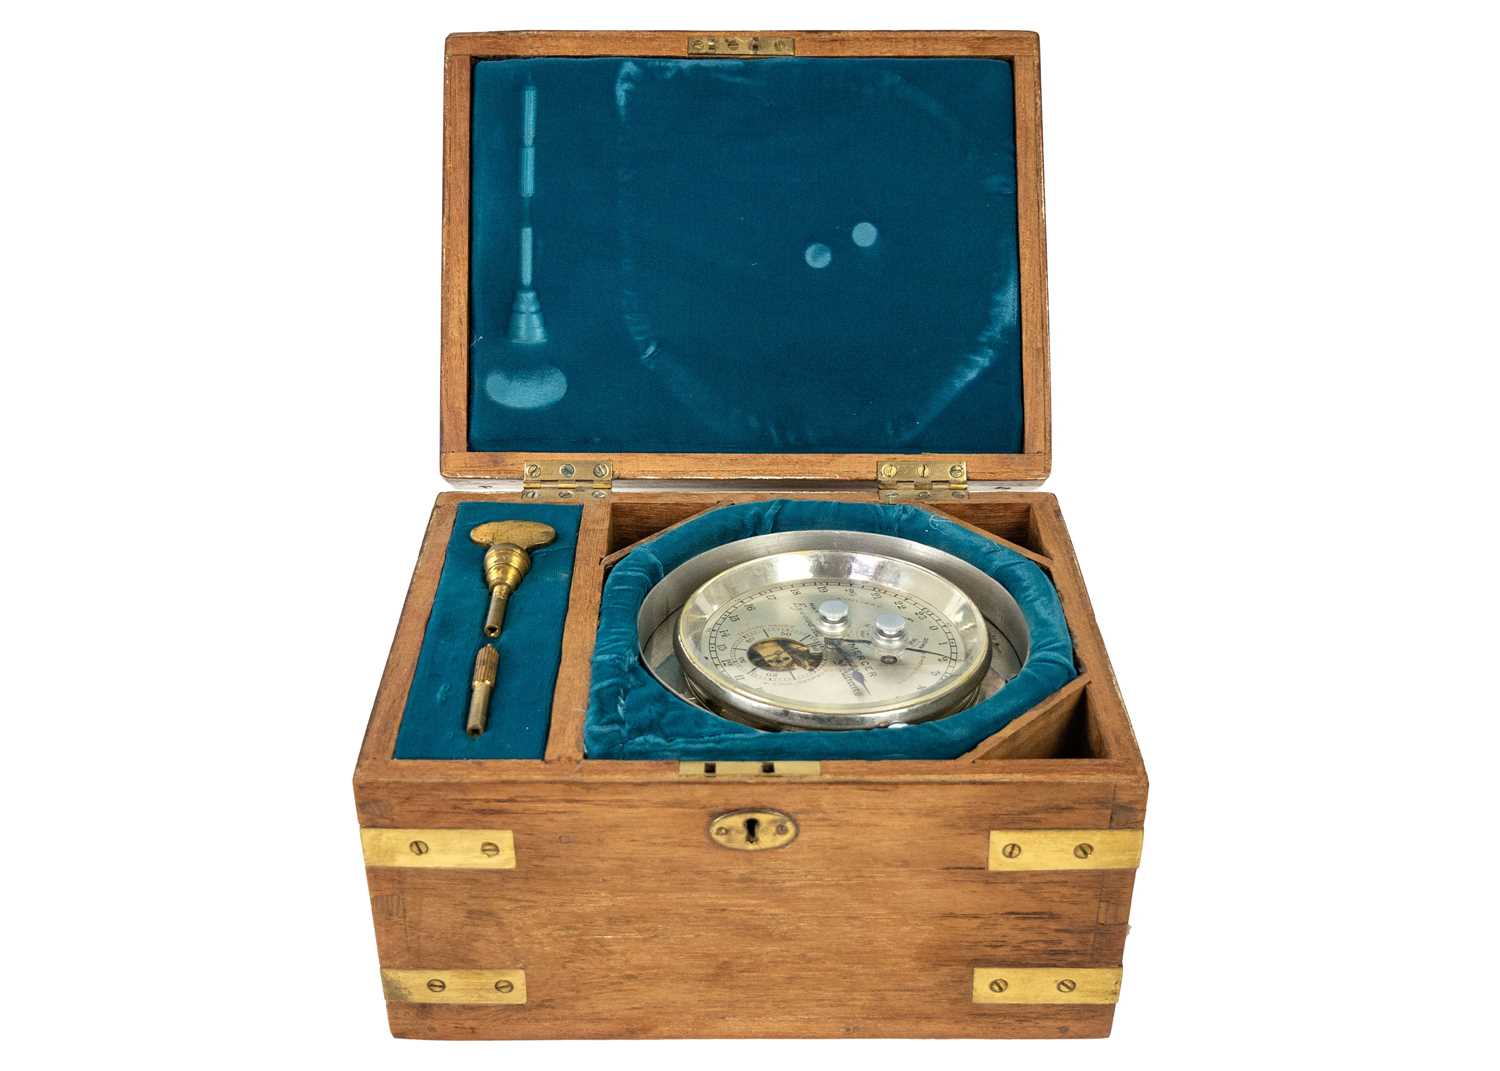 A Thomas Mercer two day survey chronometer, No 14622.